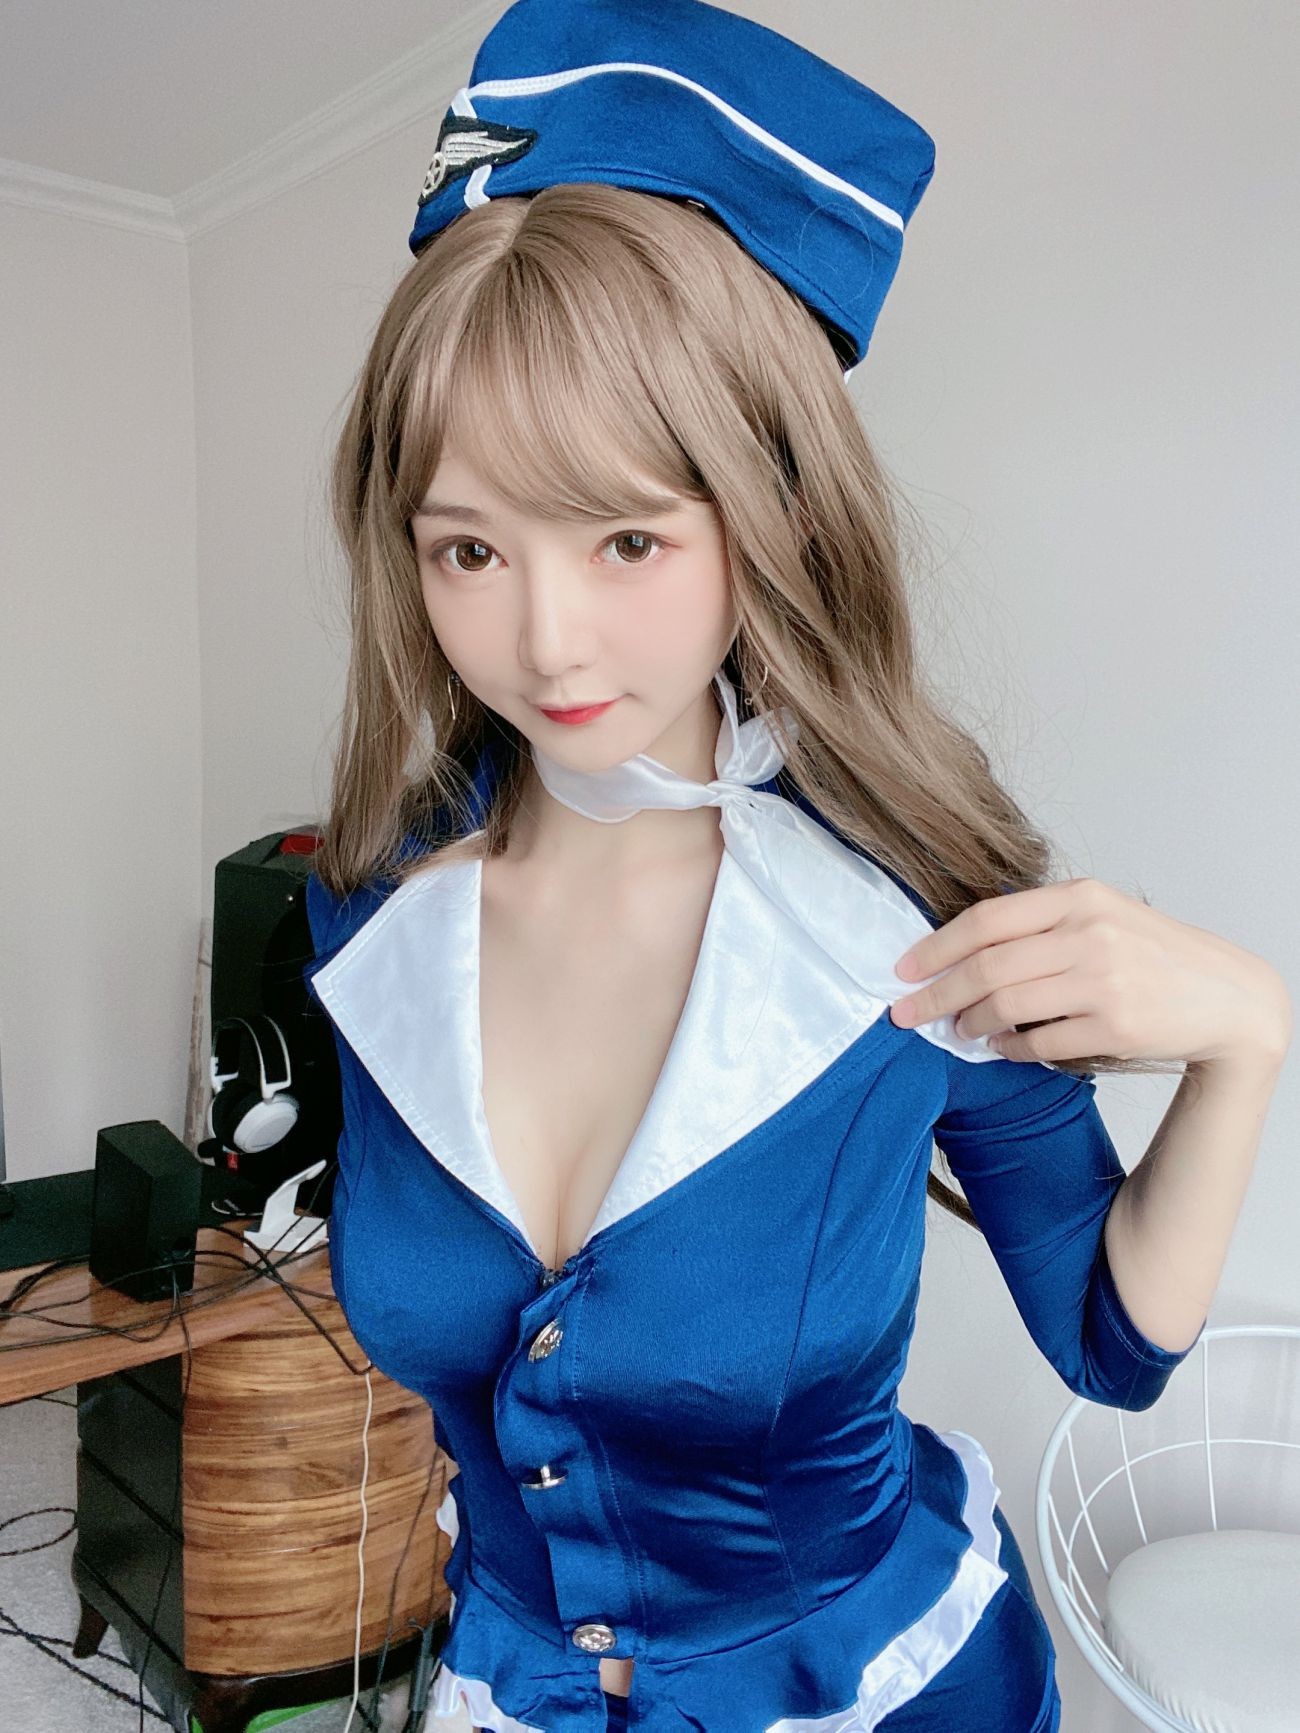 微博美少女51酱性感写真蓝色制服装 (18)